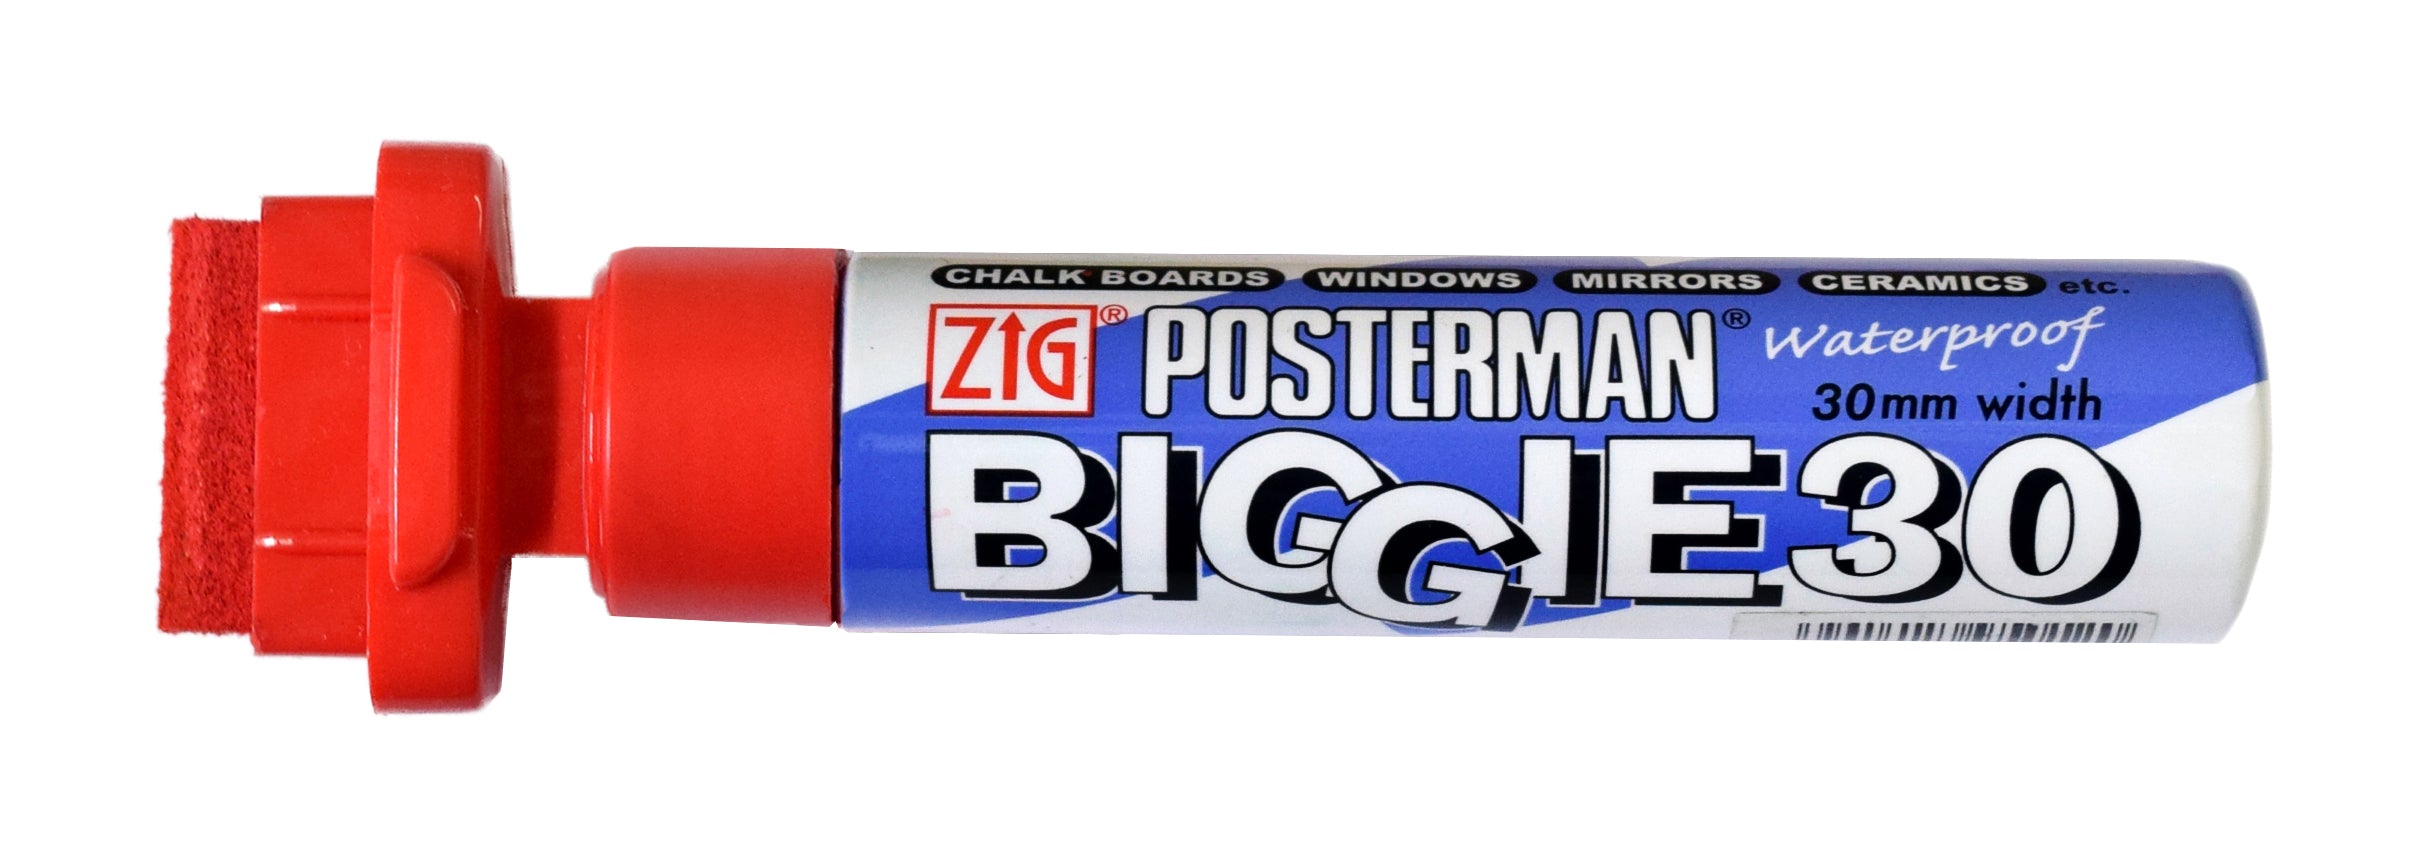 Paint Markers - Zig Posterman Biggie 30, 1-1/4